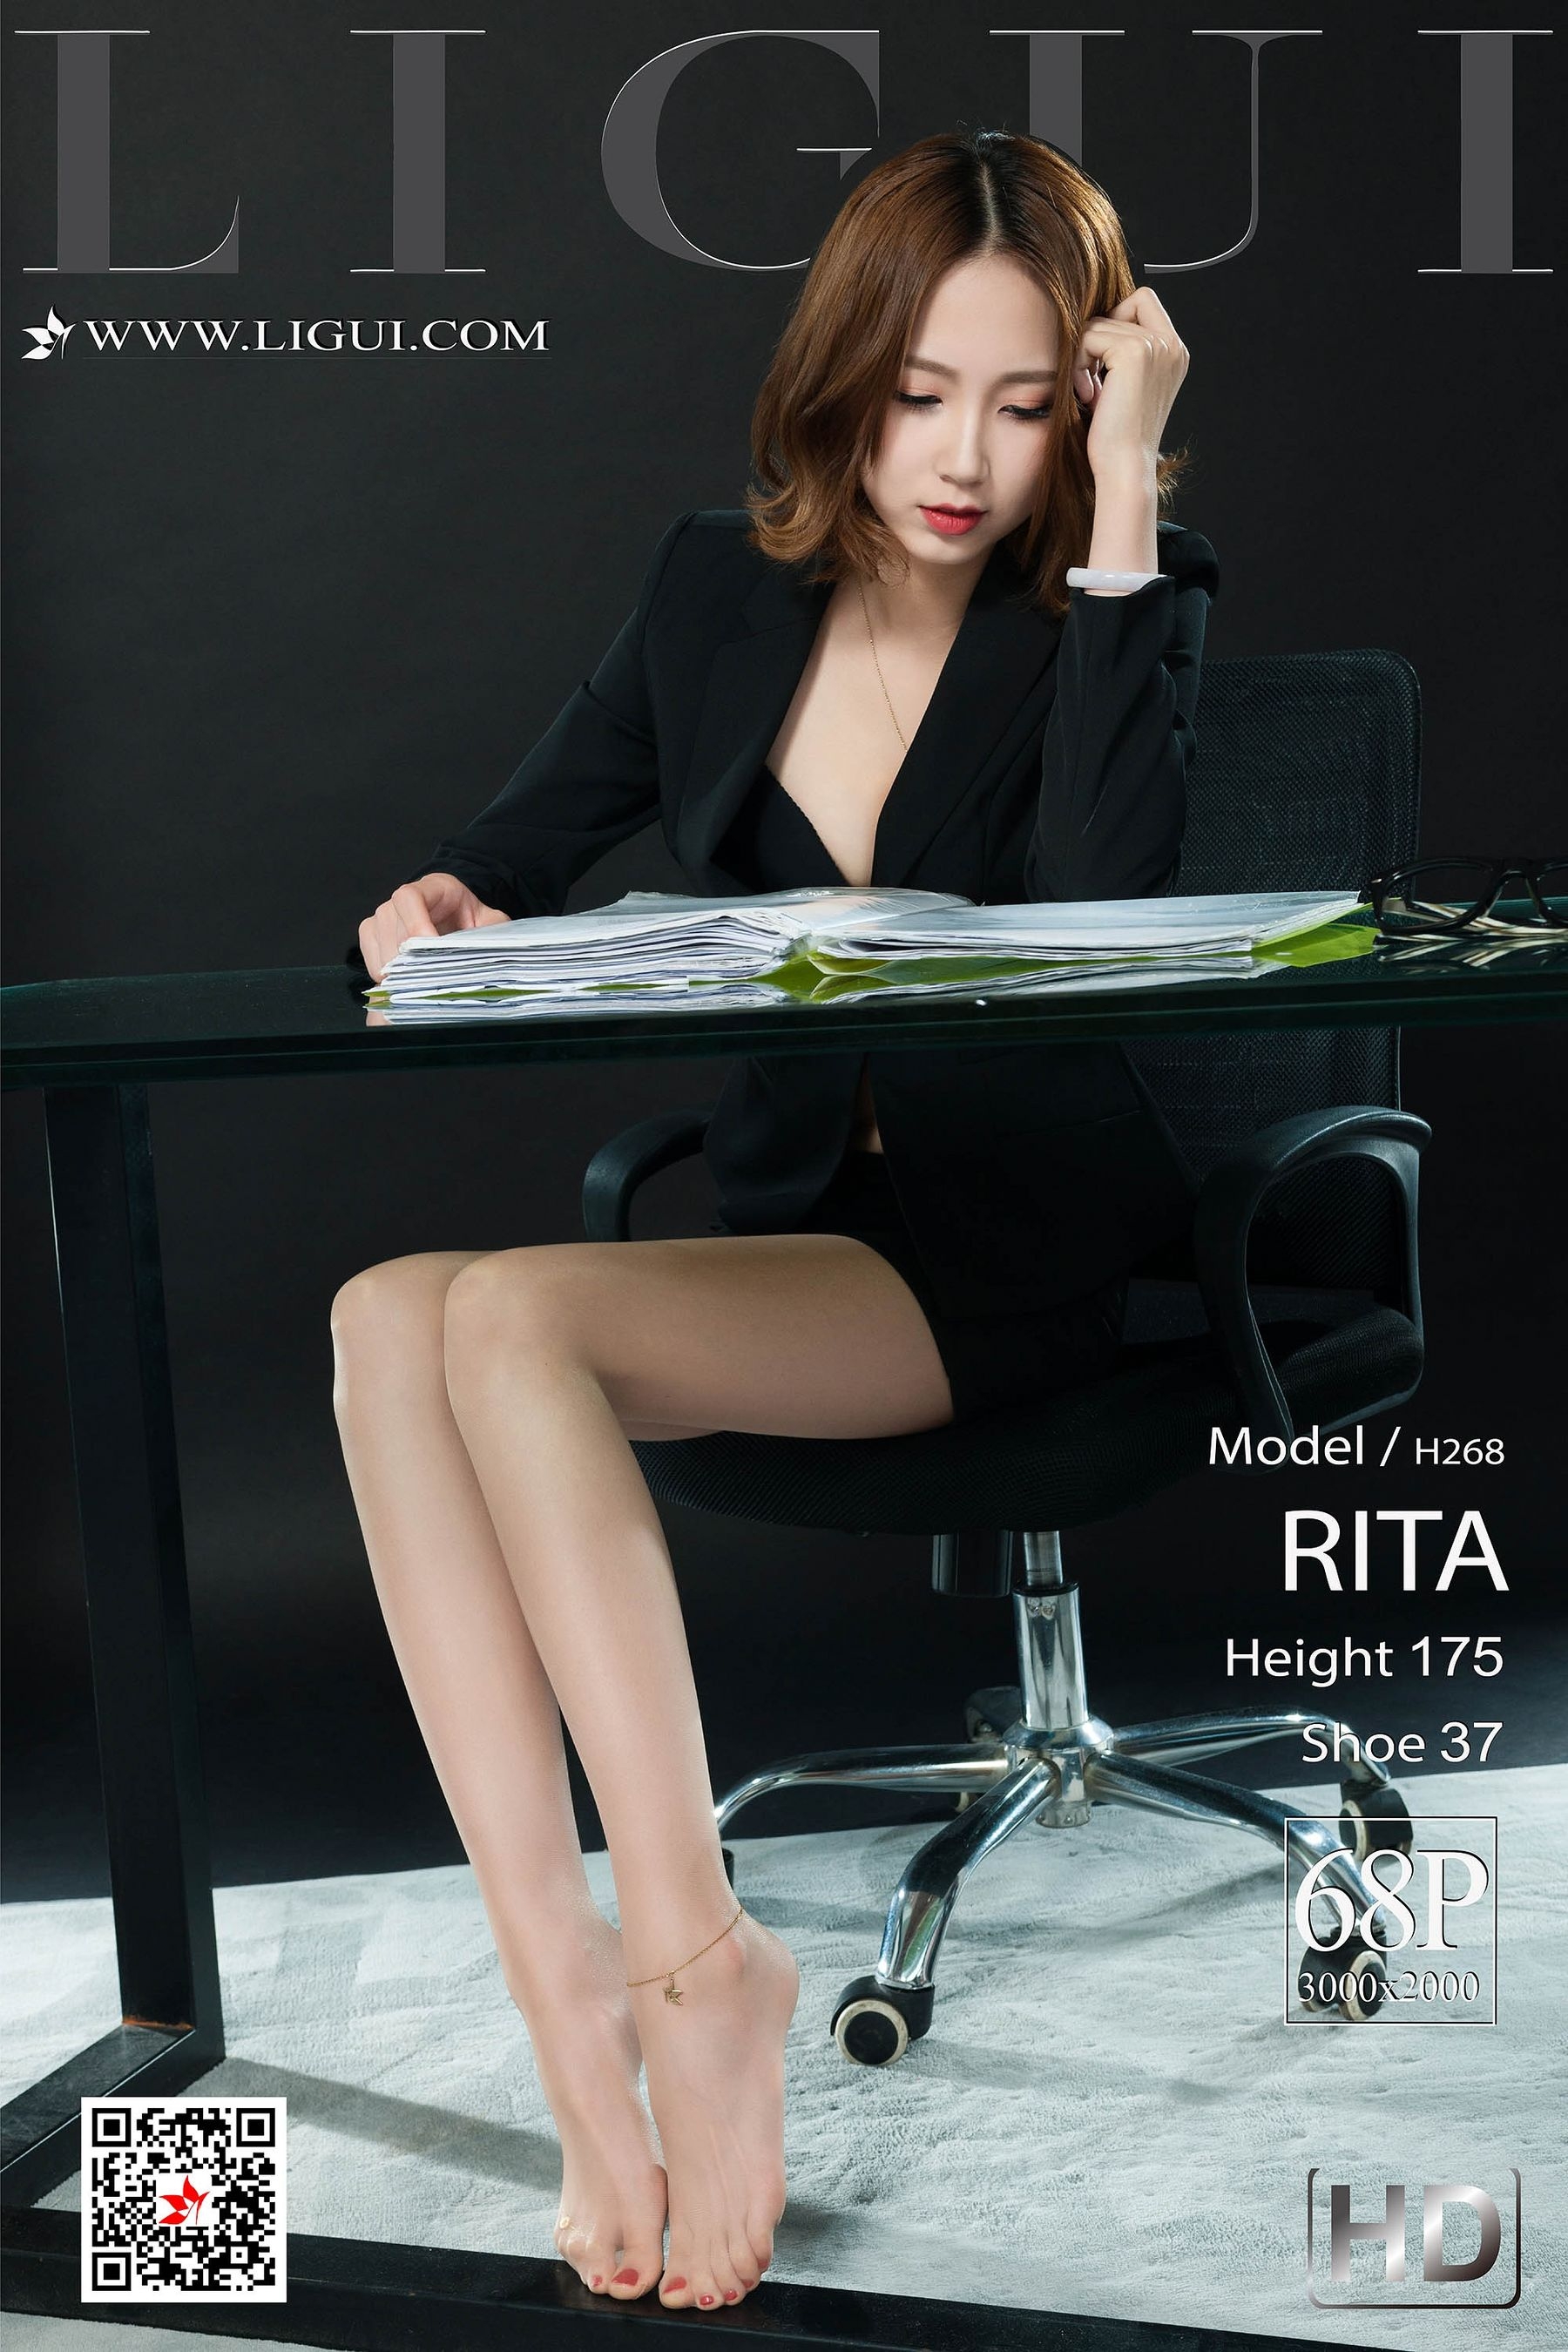 [丽柜LiGui] 网络丽人 Model RITA  第-1张